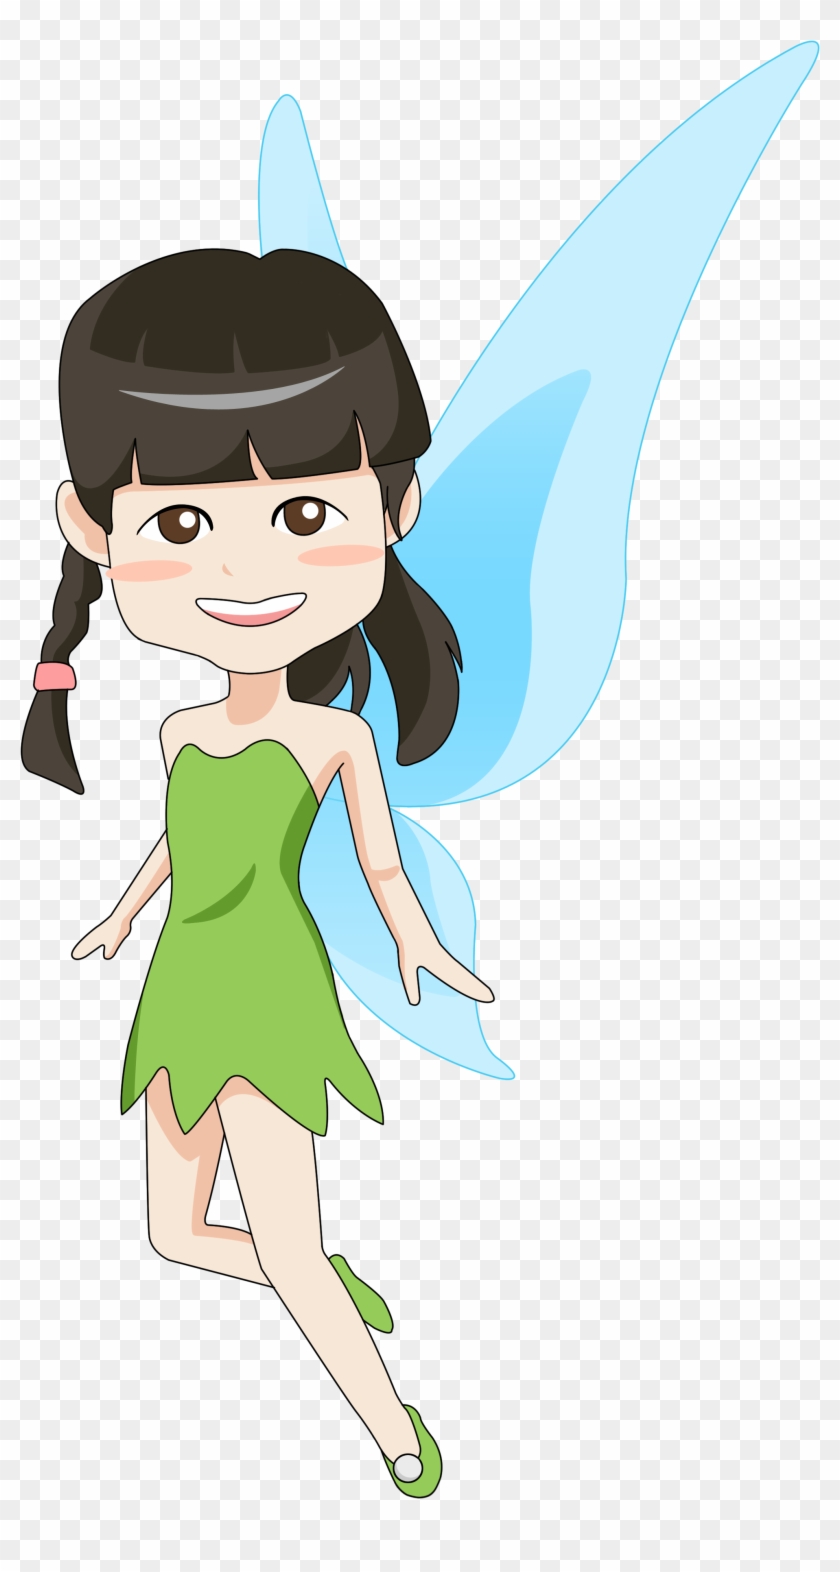 Draw You A Cute Cartoon Portrait Or Illustration - Fairy #1136168